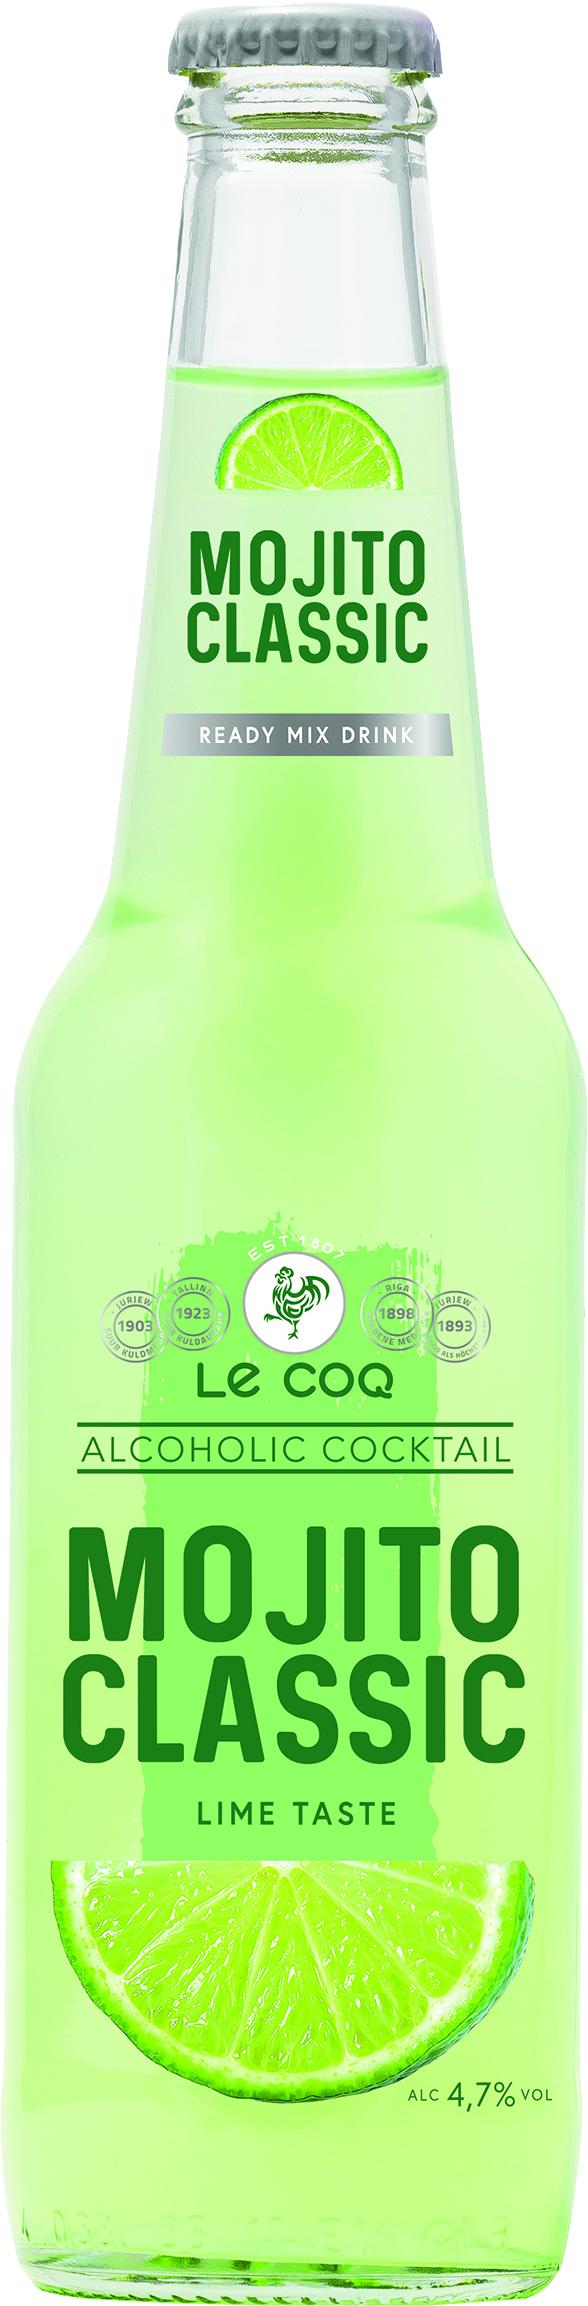 Slika za Cider-koktel LE Coq Mojito 0,33l